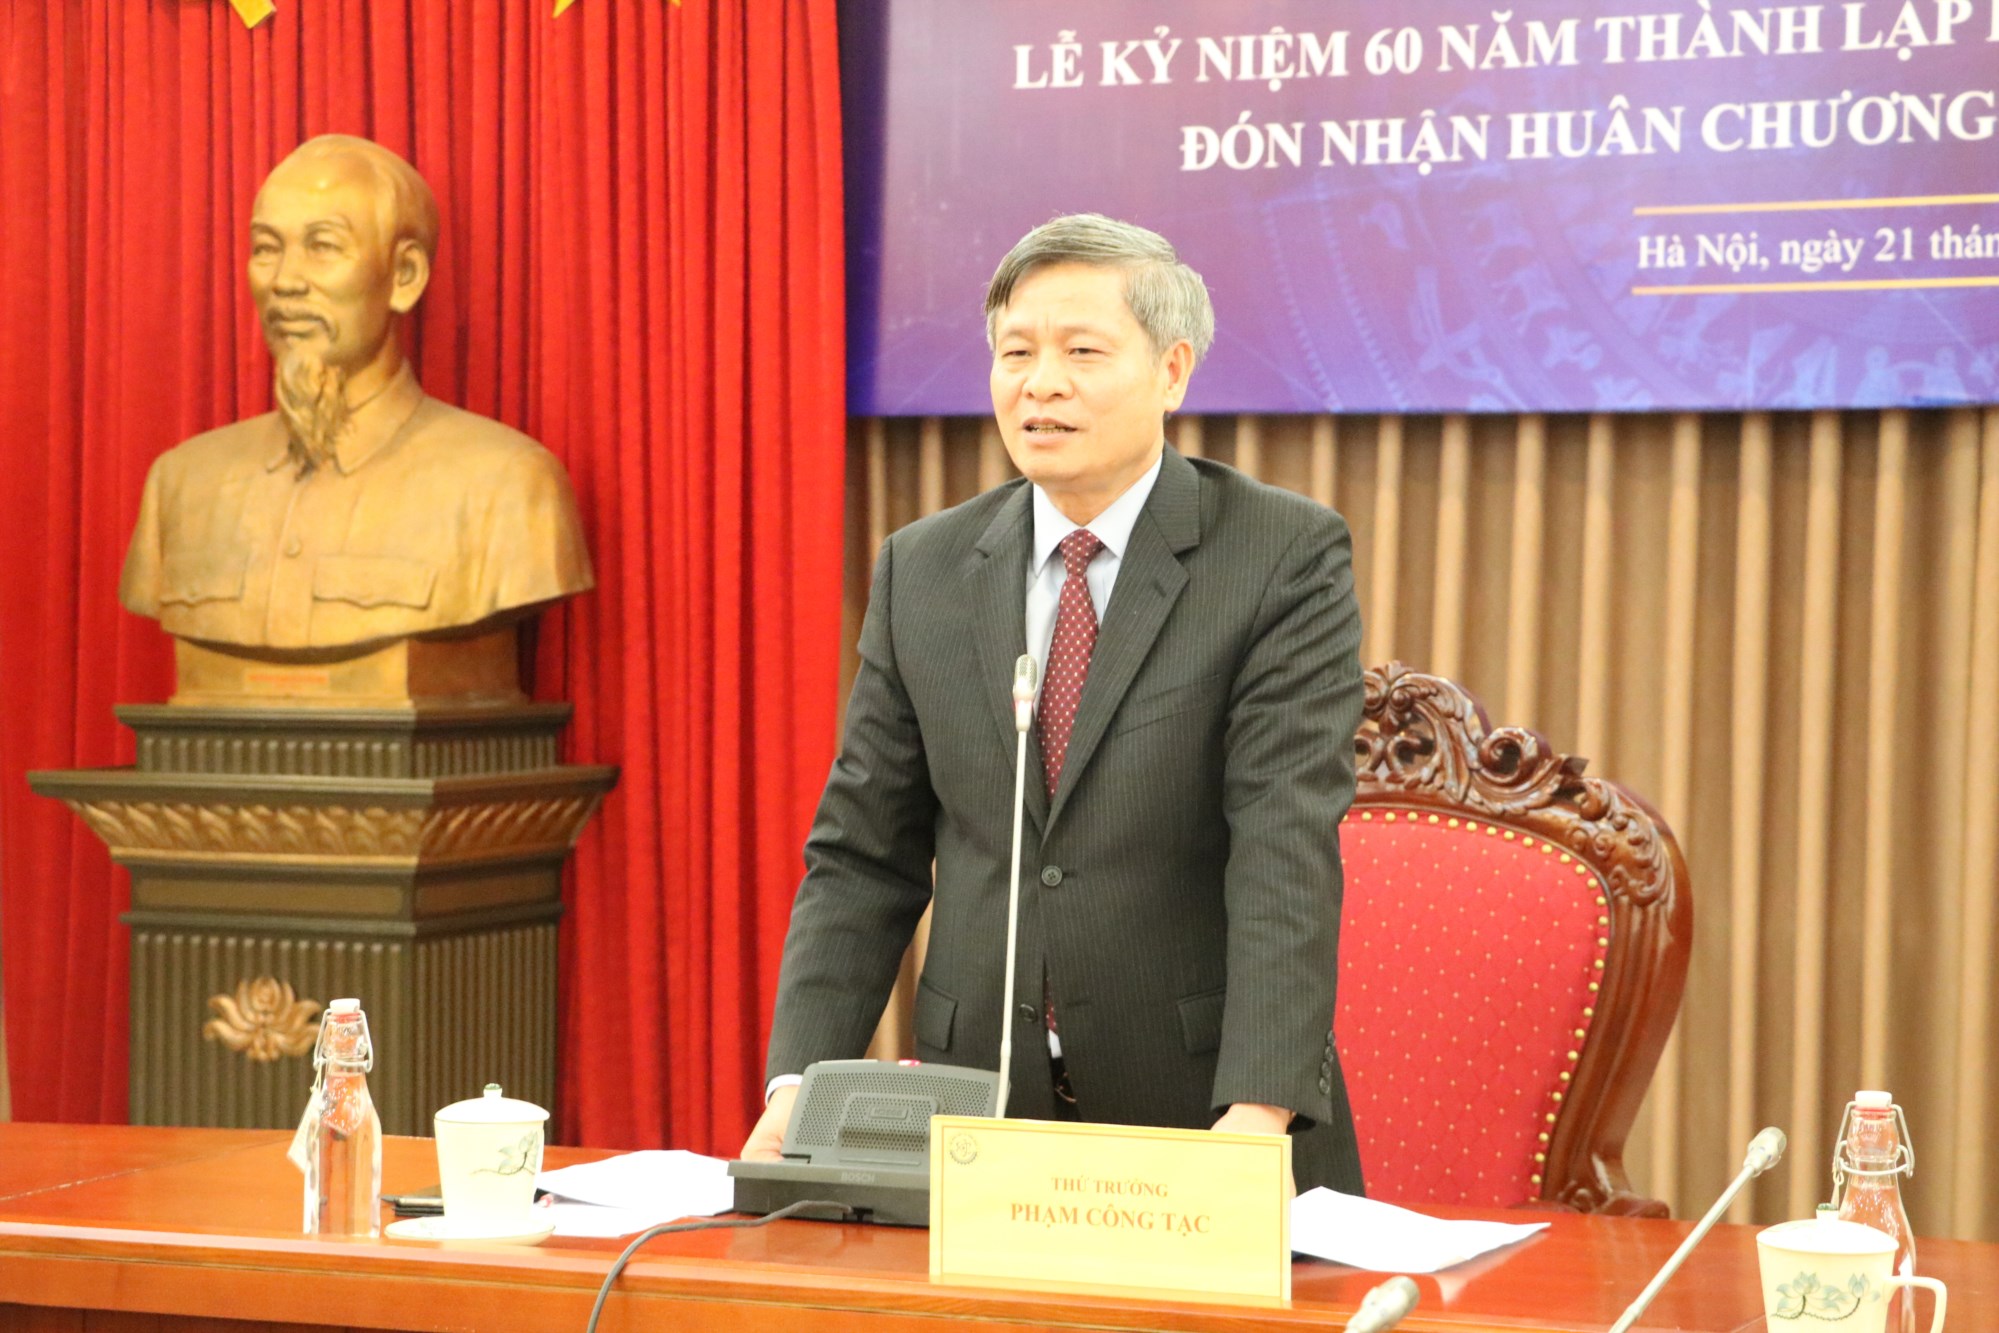 Ông Phạm Công Tạc, Thứ trưởng Bộ KH&CN phát biểu tại buổi Họp báo